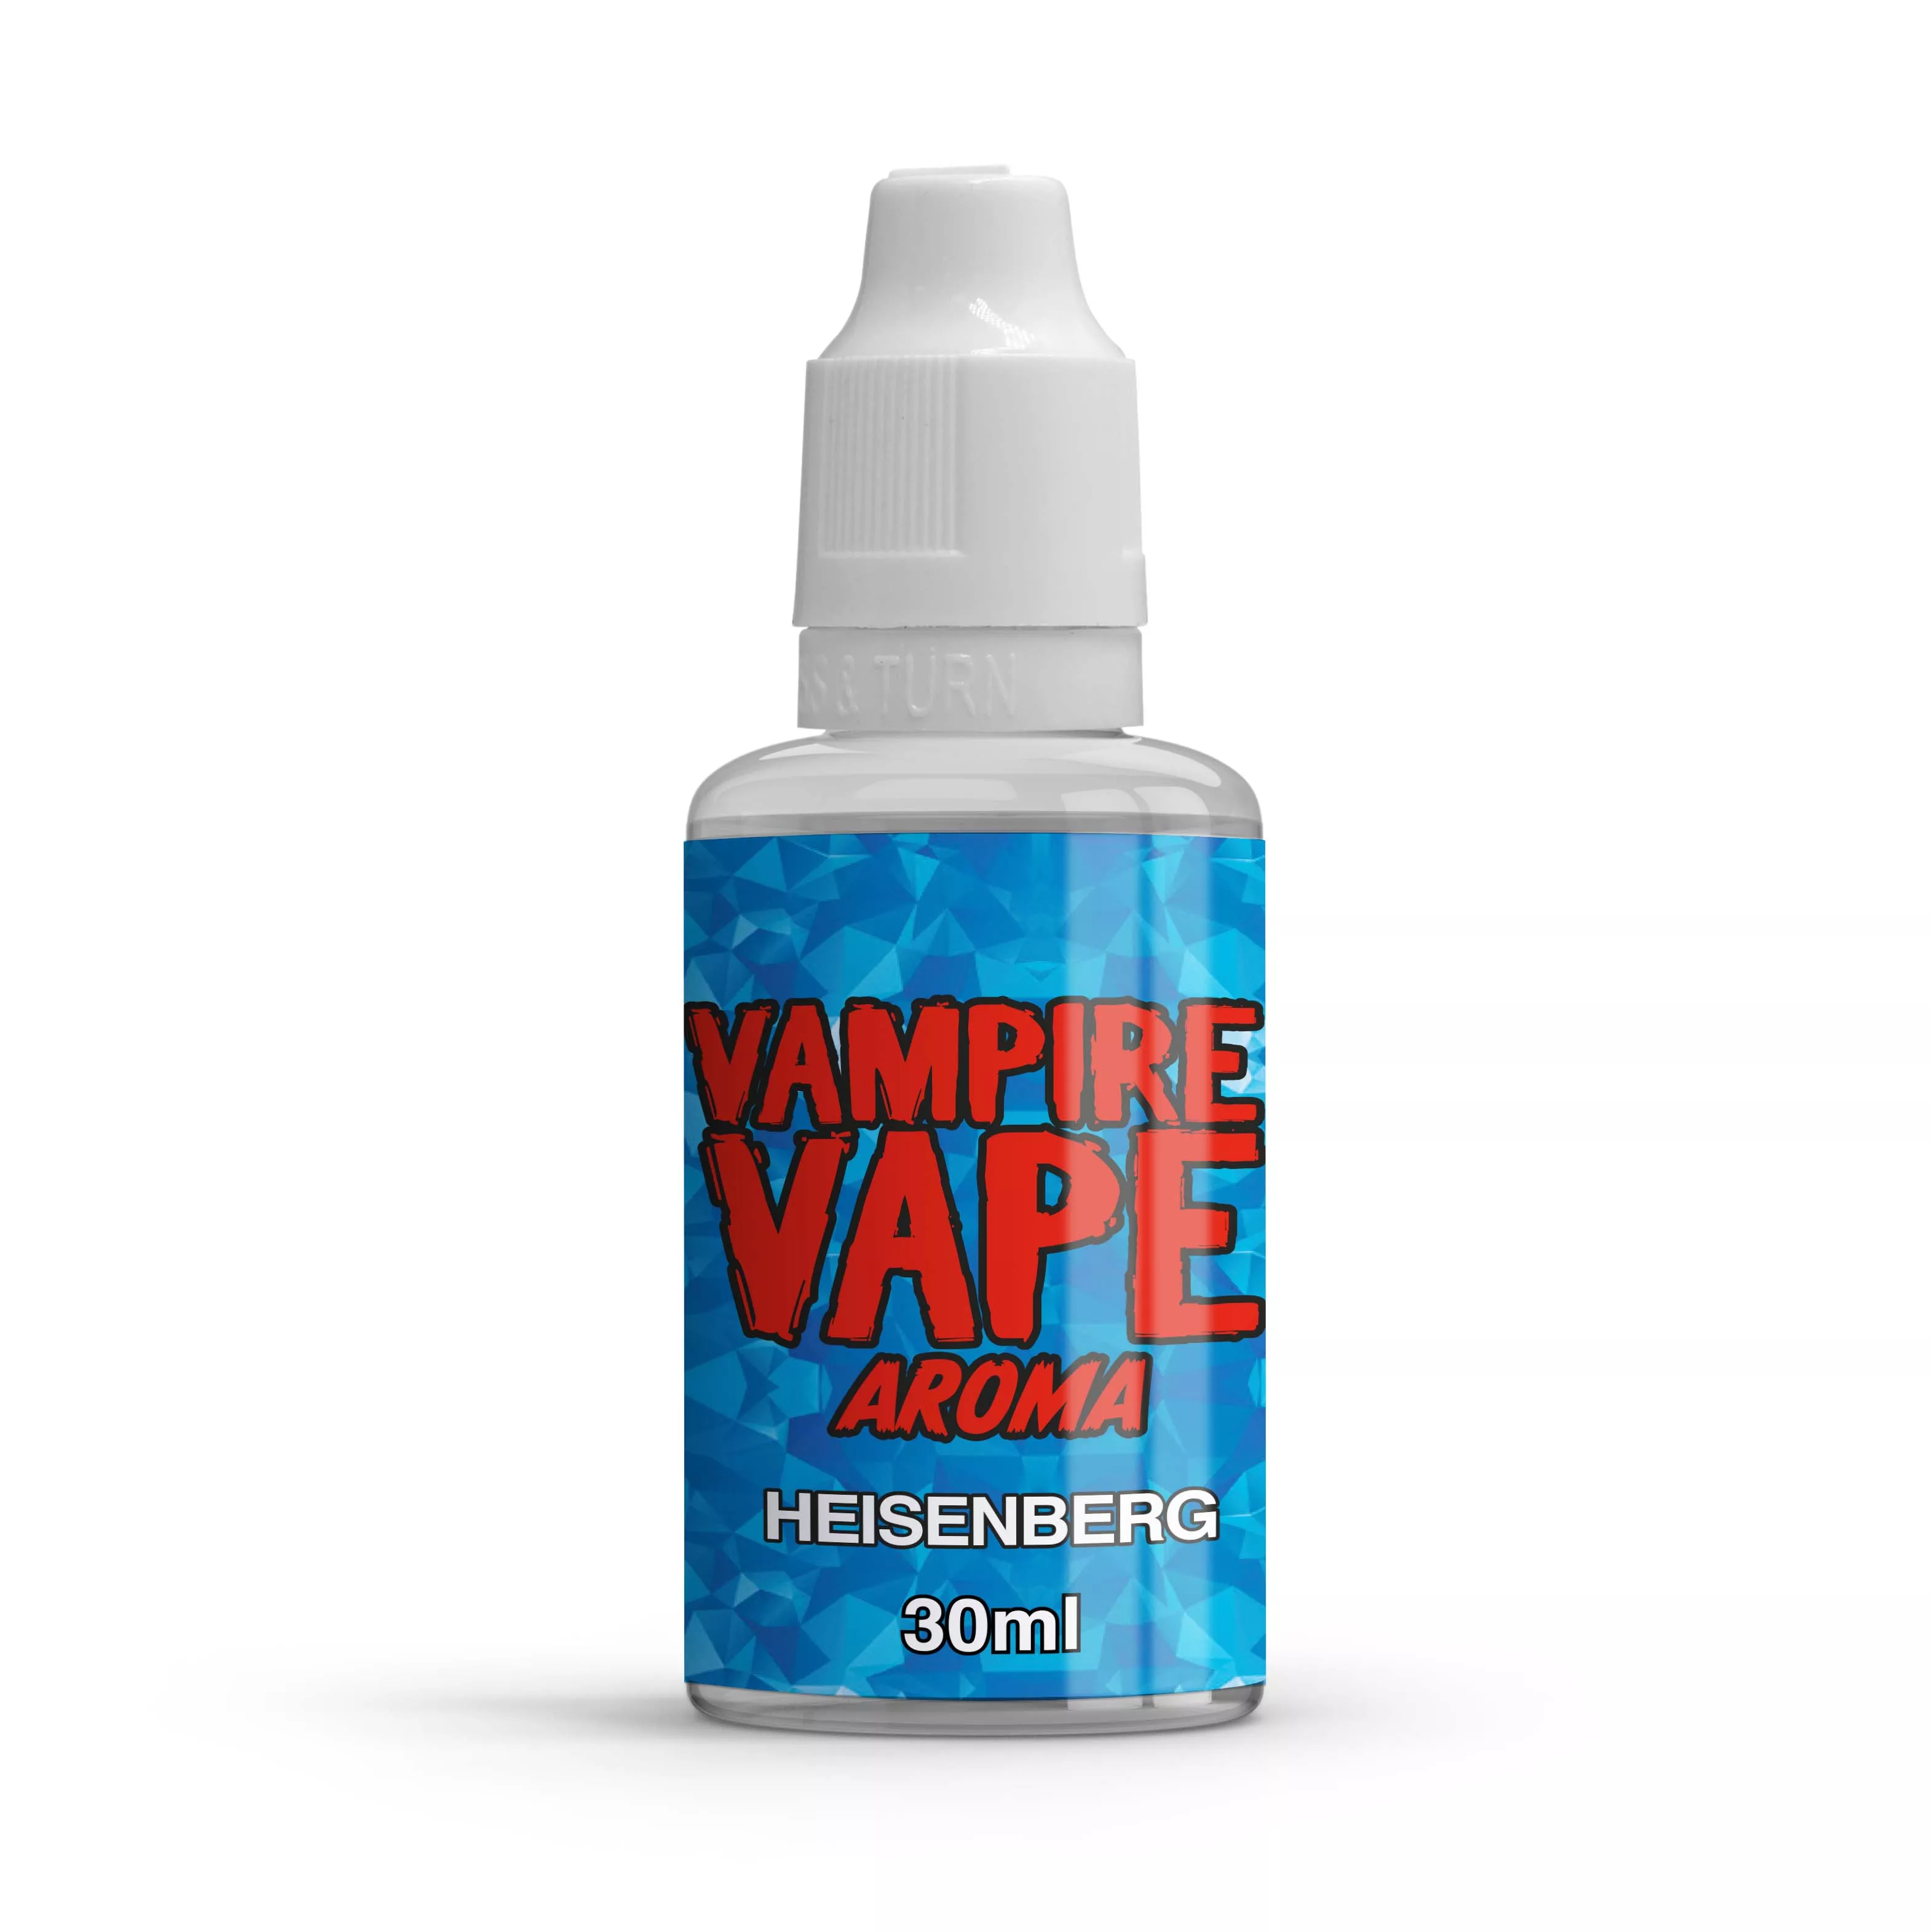 Vampire Vape Heisenberg 30ml Aroma